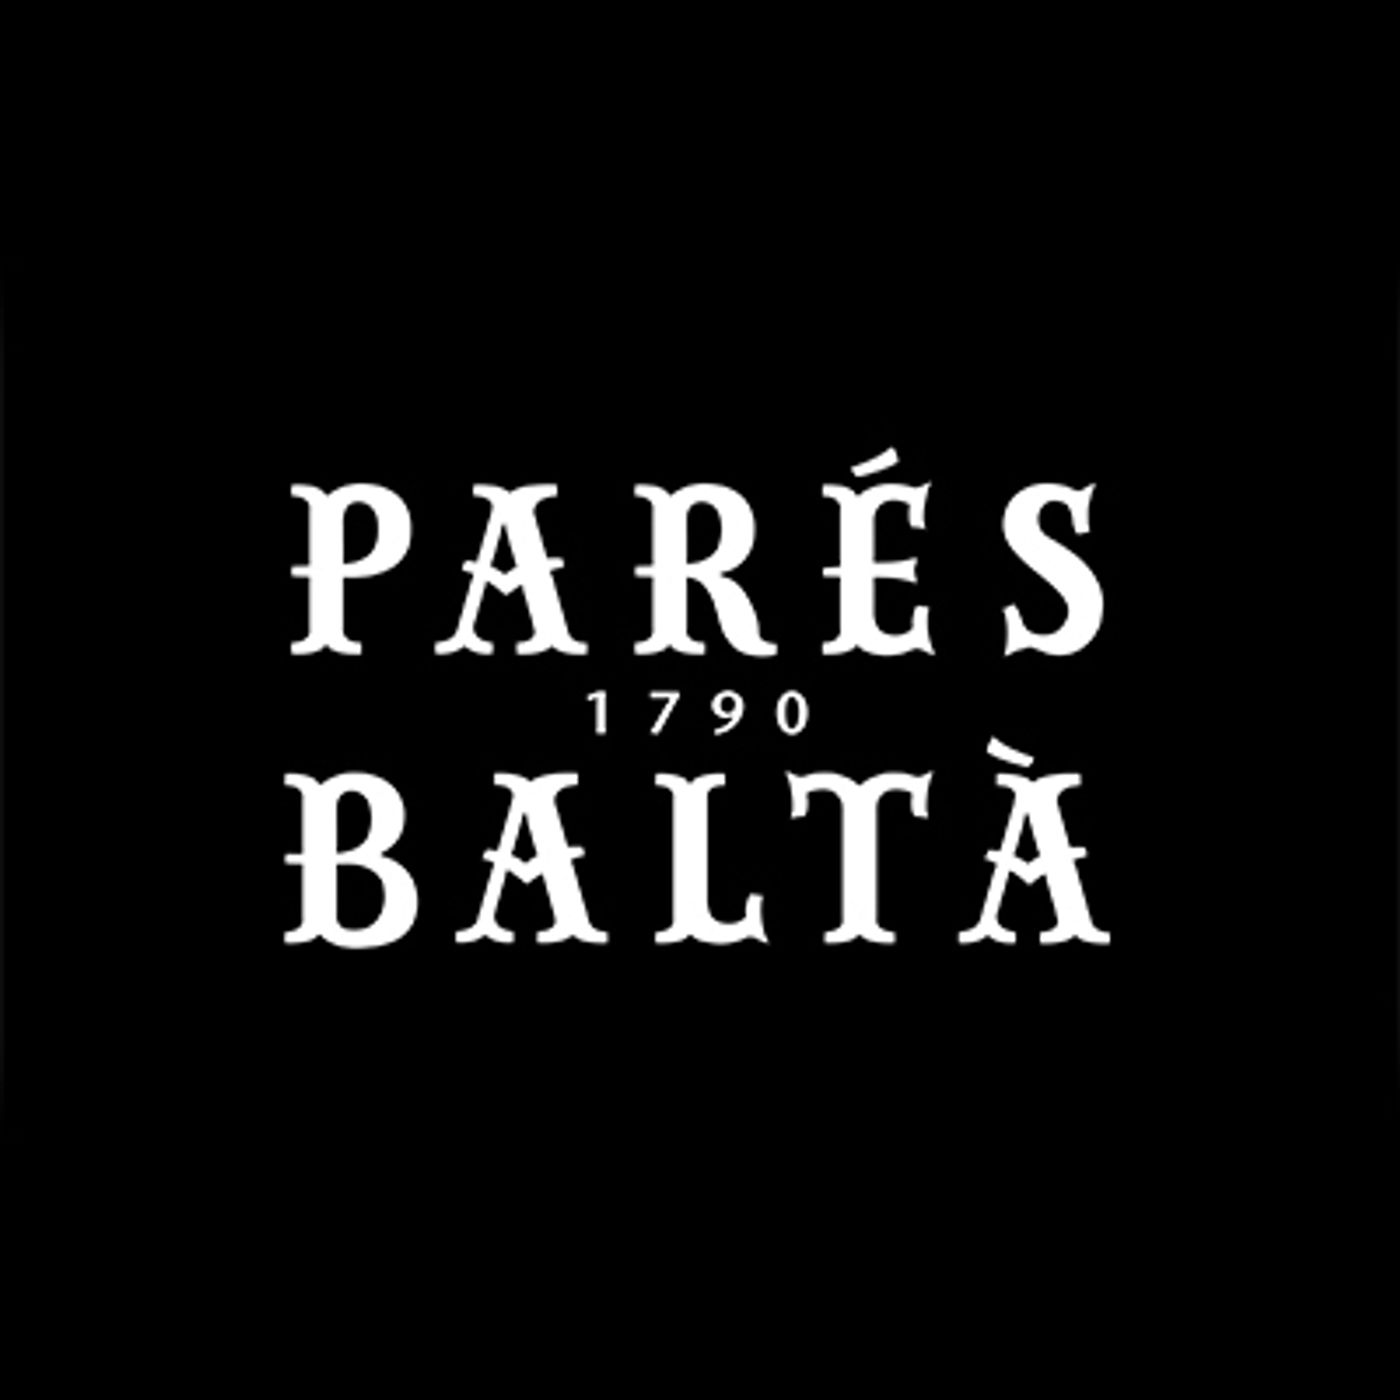 Spain - Parès Baltà - Marta Casas